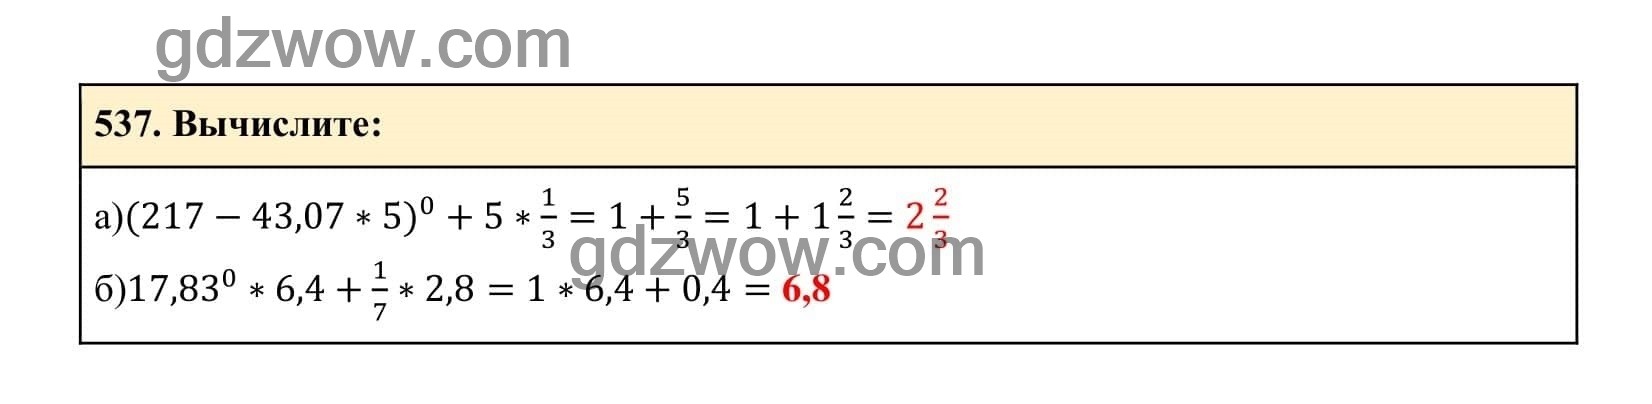 Упражнение 537 - ГДЗ по Алгебре 7 класс Учебник Макарычев (решебник) - GDZwow